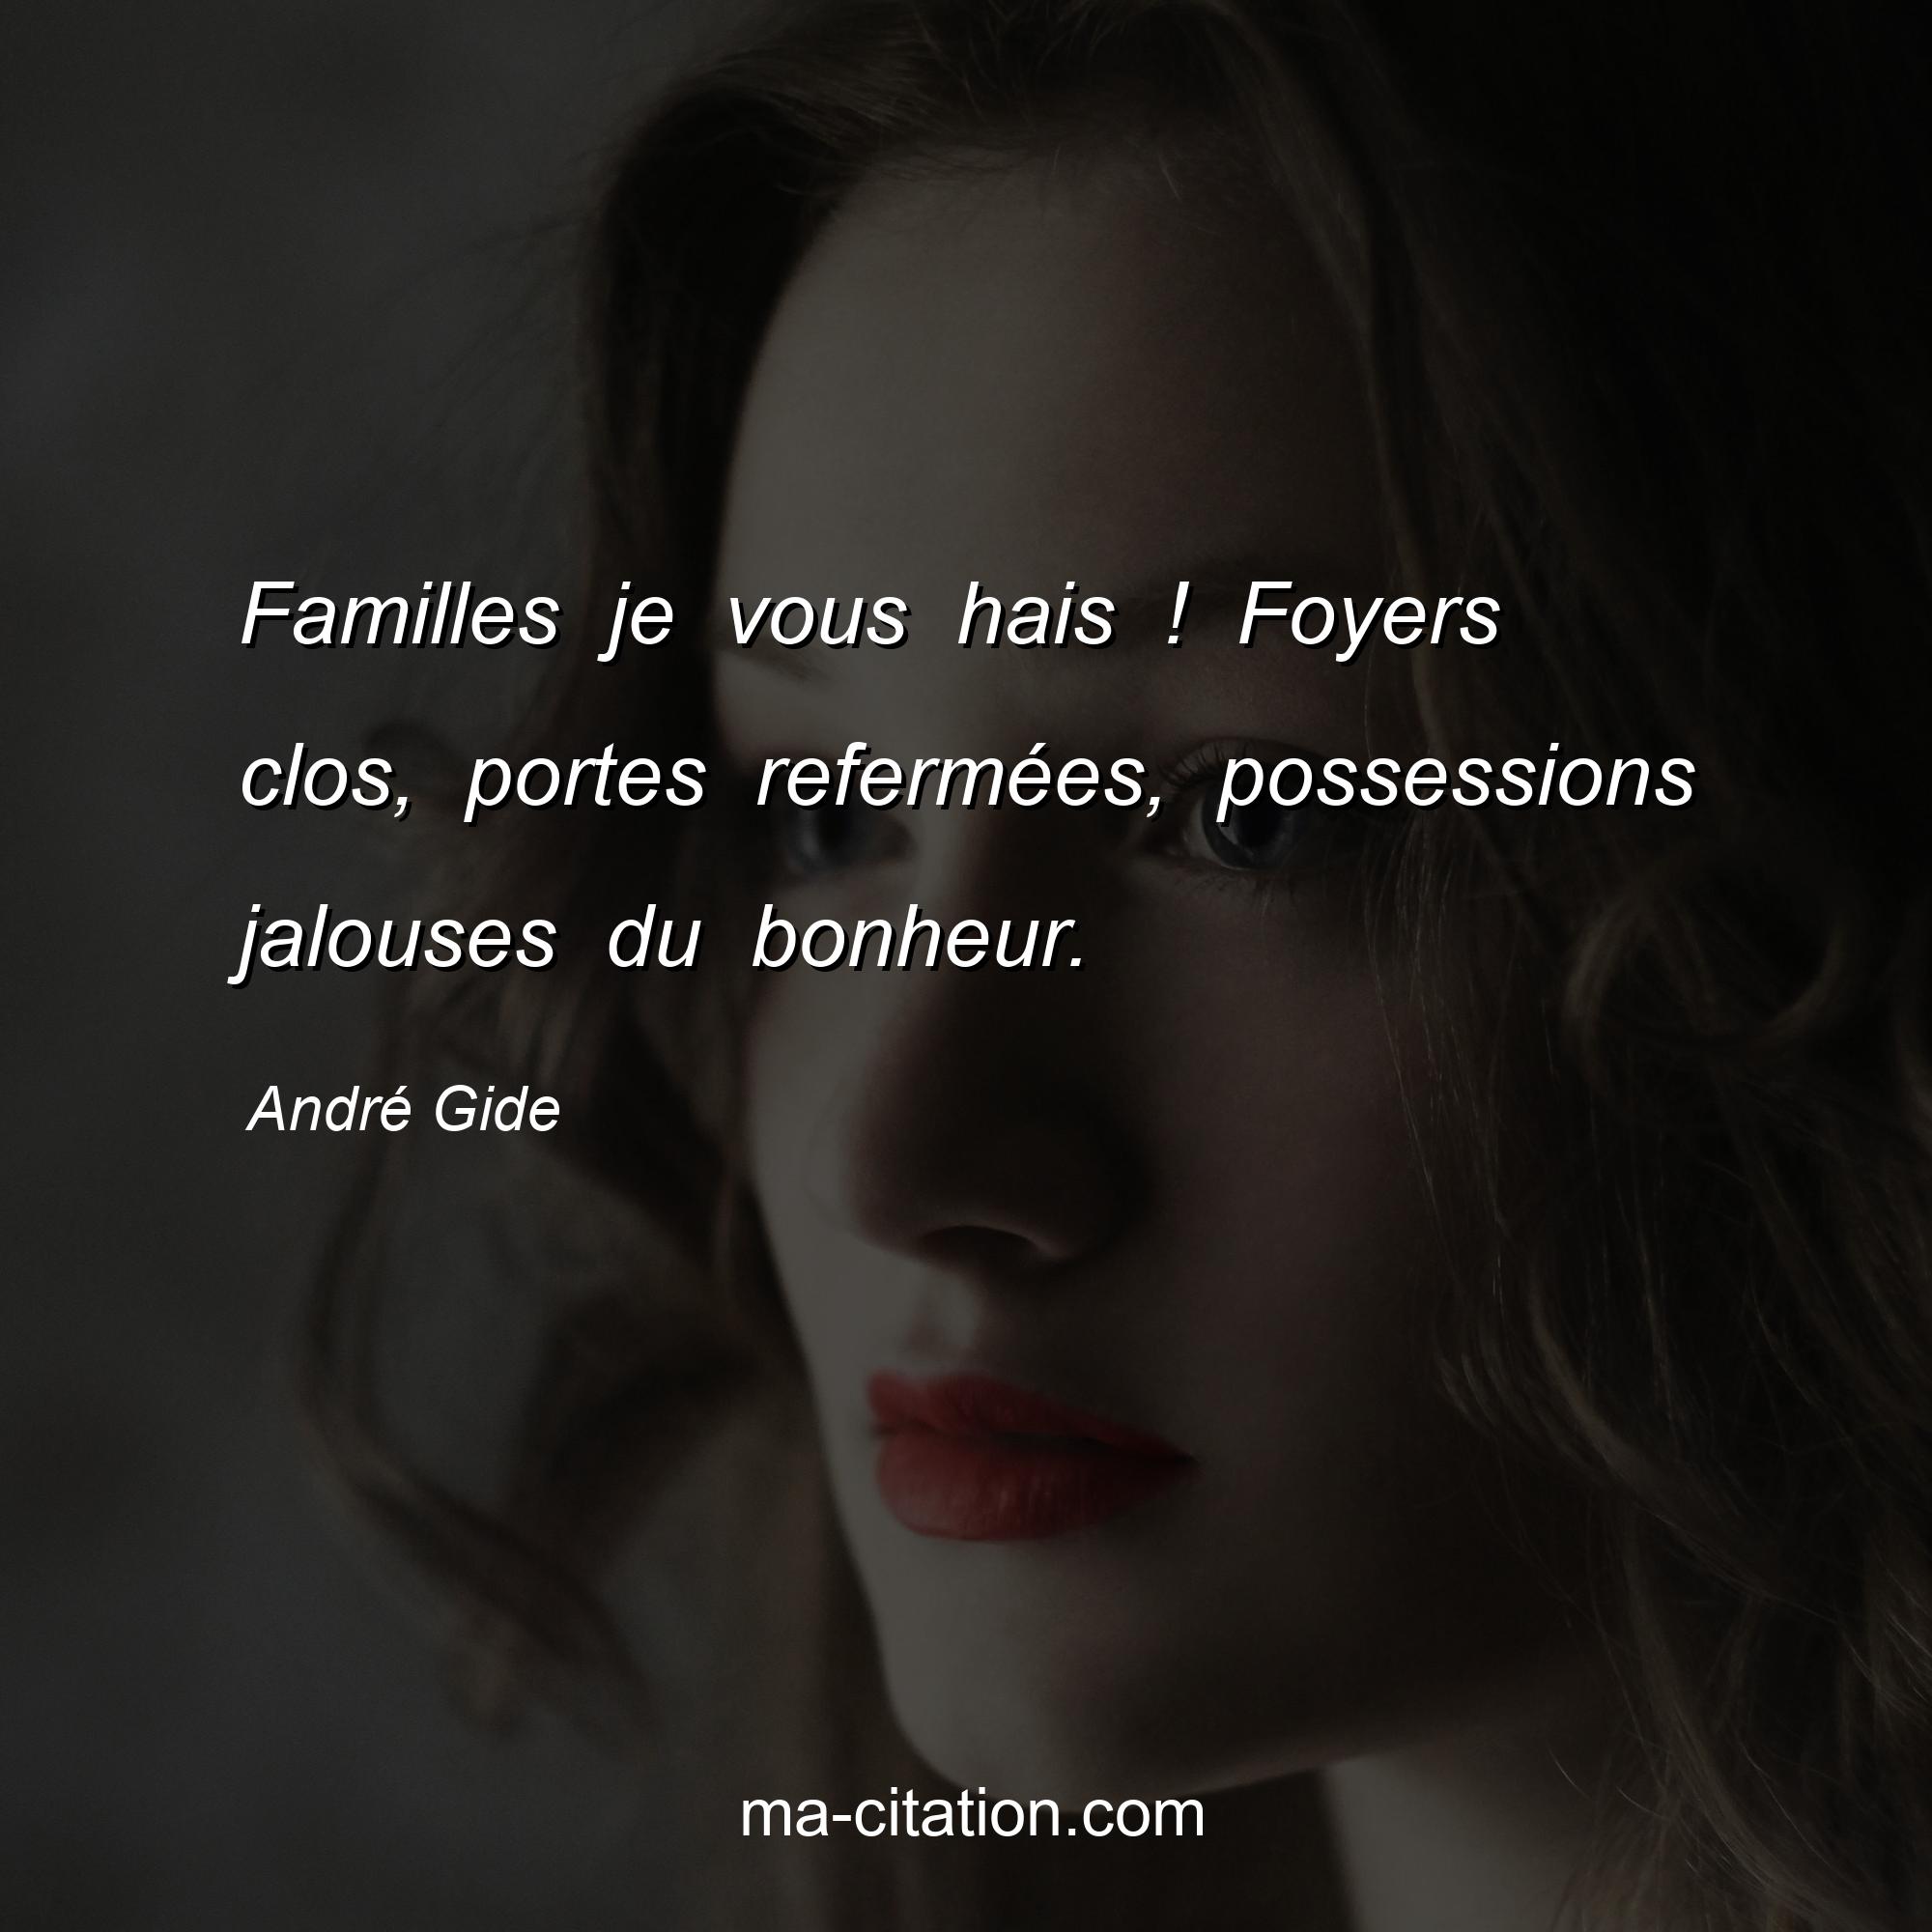 André Gide : Familles je vous hais ! Foyers clos, portes refermées, possessions jalouses du bonheur.